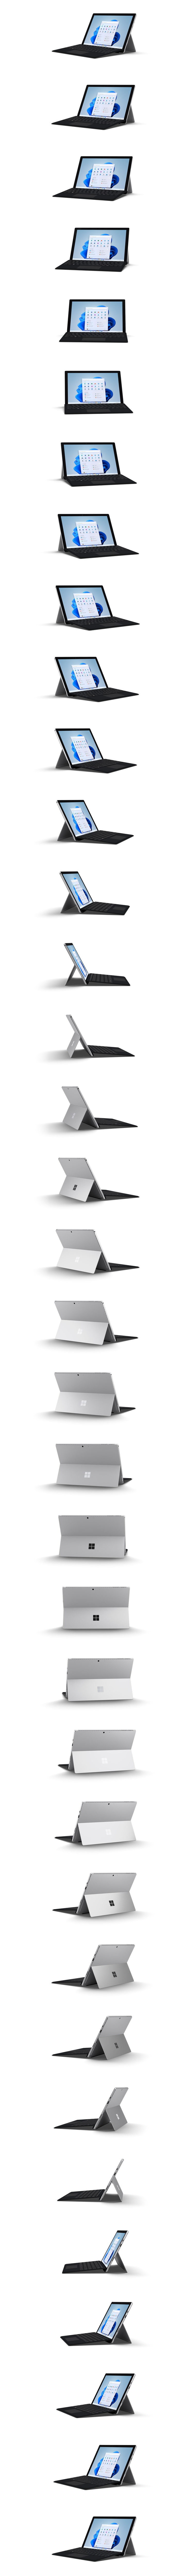 Rotazione a 360° di un dispositivo Surface Pro 7+.